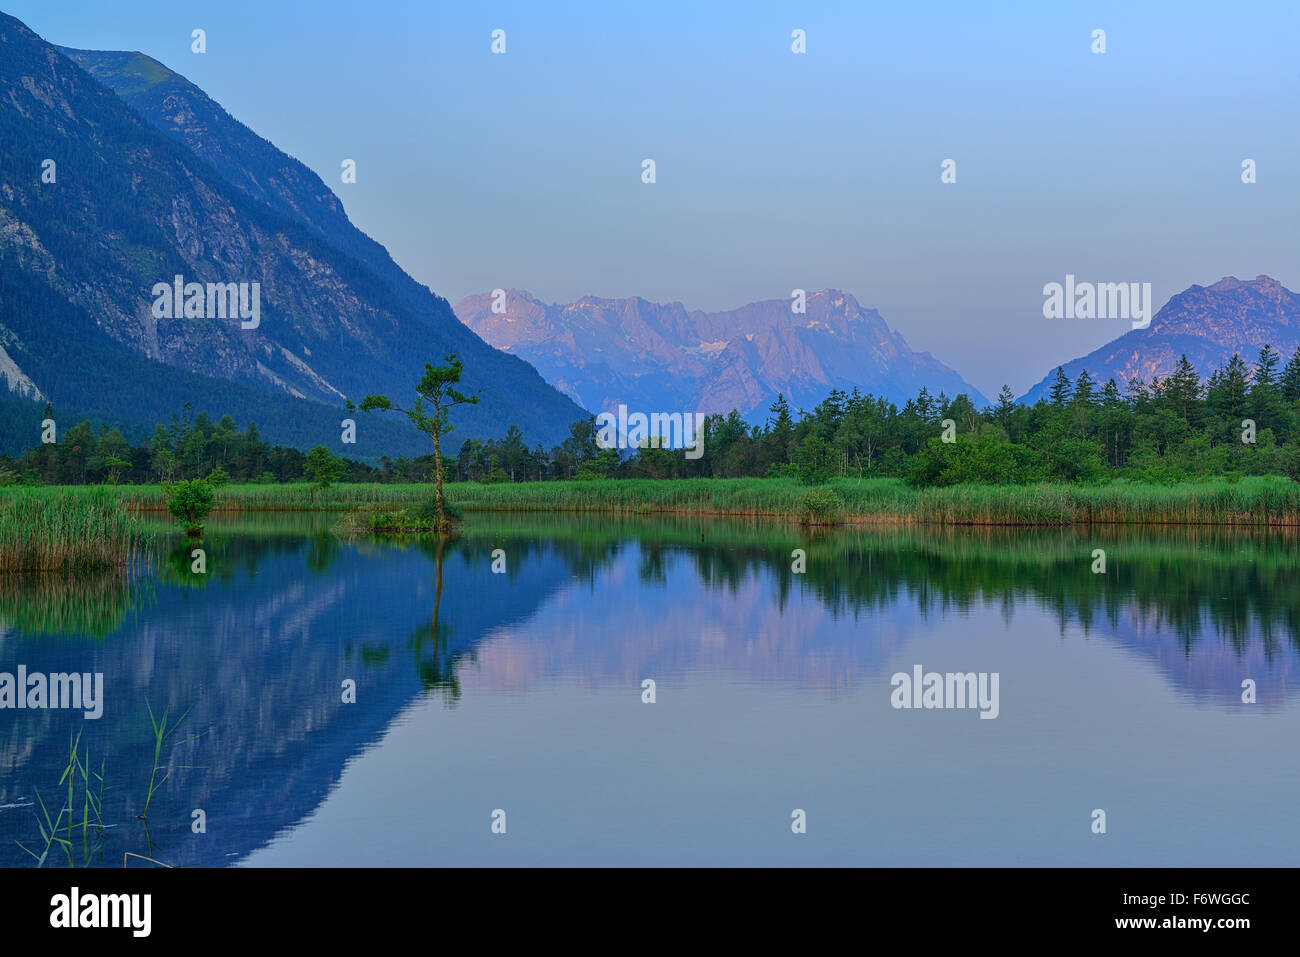 Zugspitze reflecting in a lake, Sieben Quellen, Eschenlohe, Werdenfels, Wetterstein range, Upper Bavaria, Bavaria, Germany Stock Photo